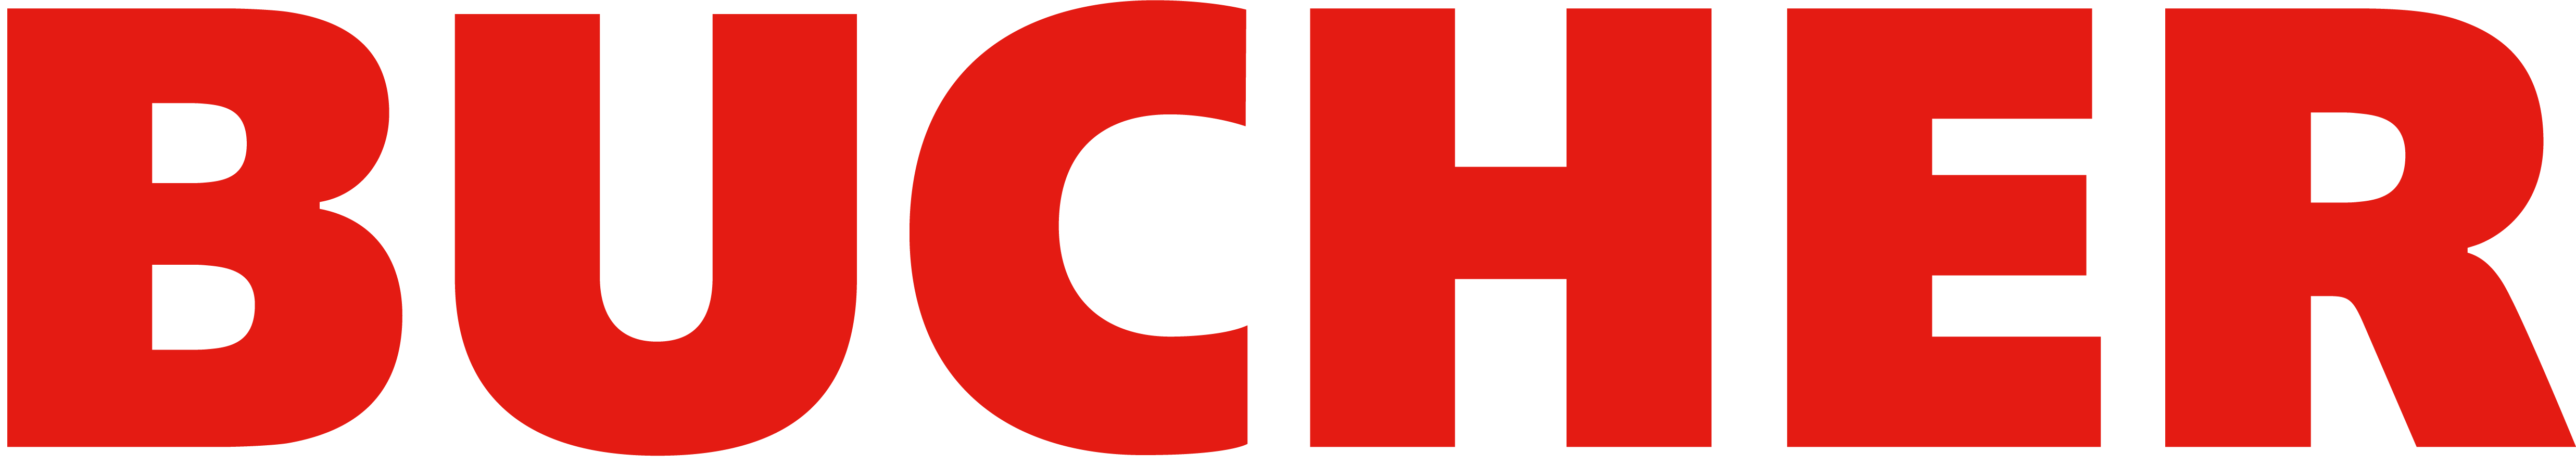 Logo Bucher Municipal AG Trägerschaftsmitglied der ABB Technikerschule